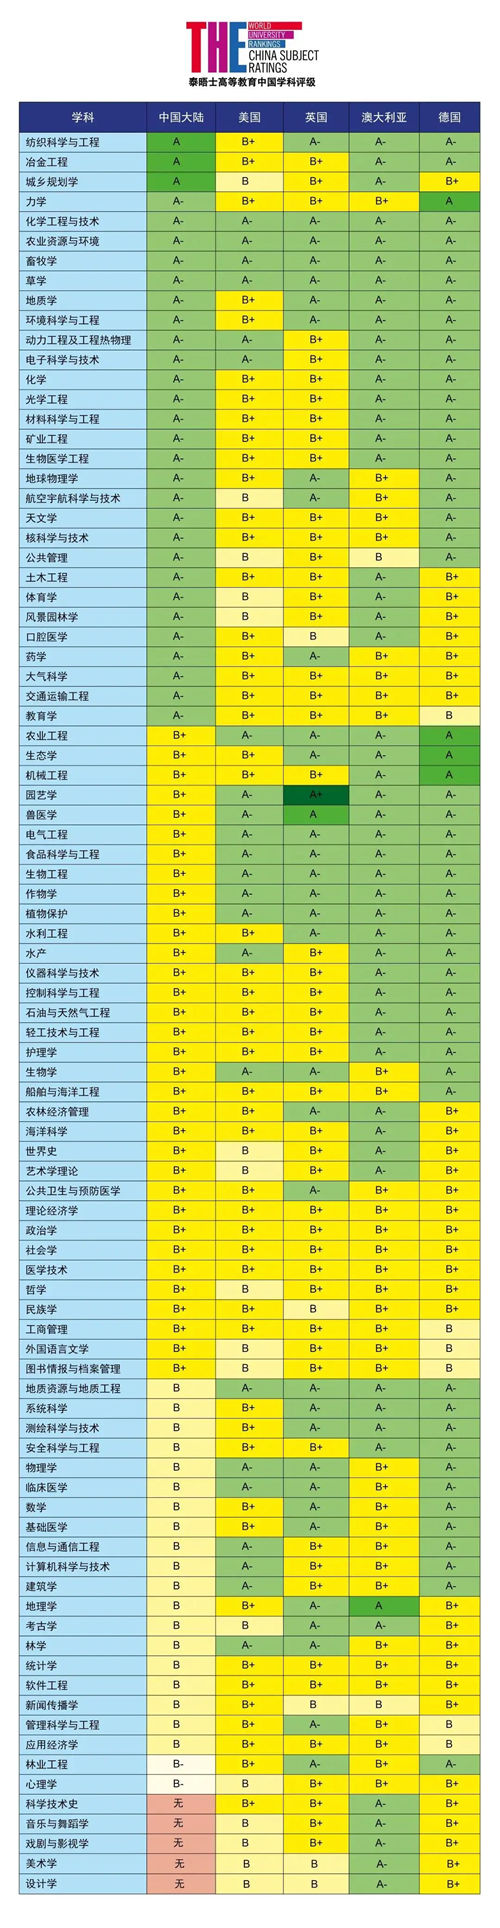 泰晤士2021中国学科评级结果出炉 深圳大学上榜